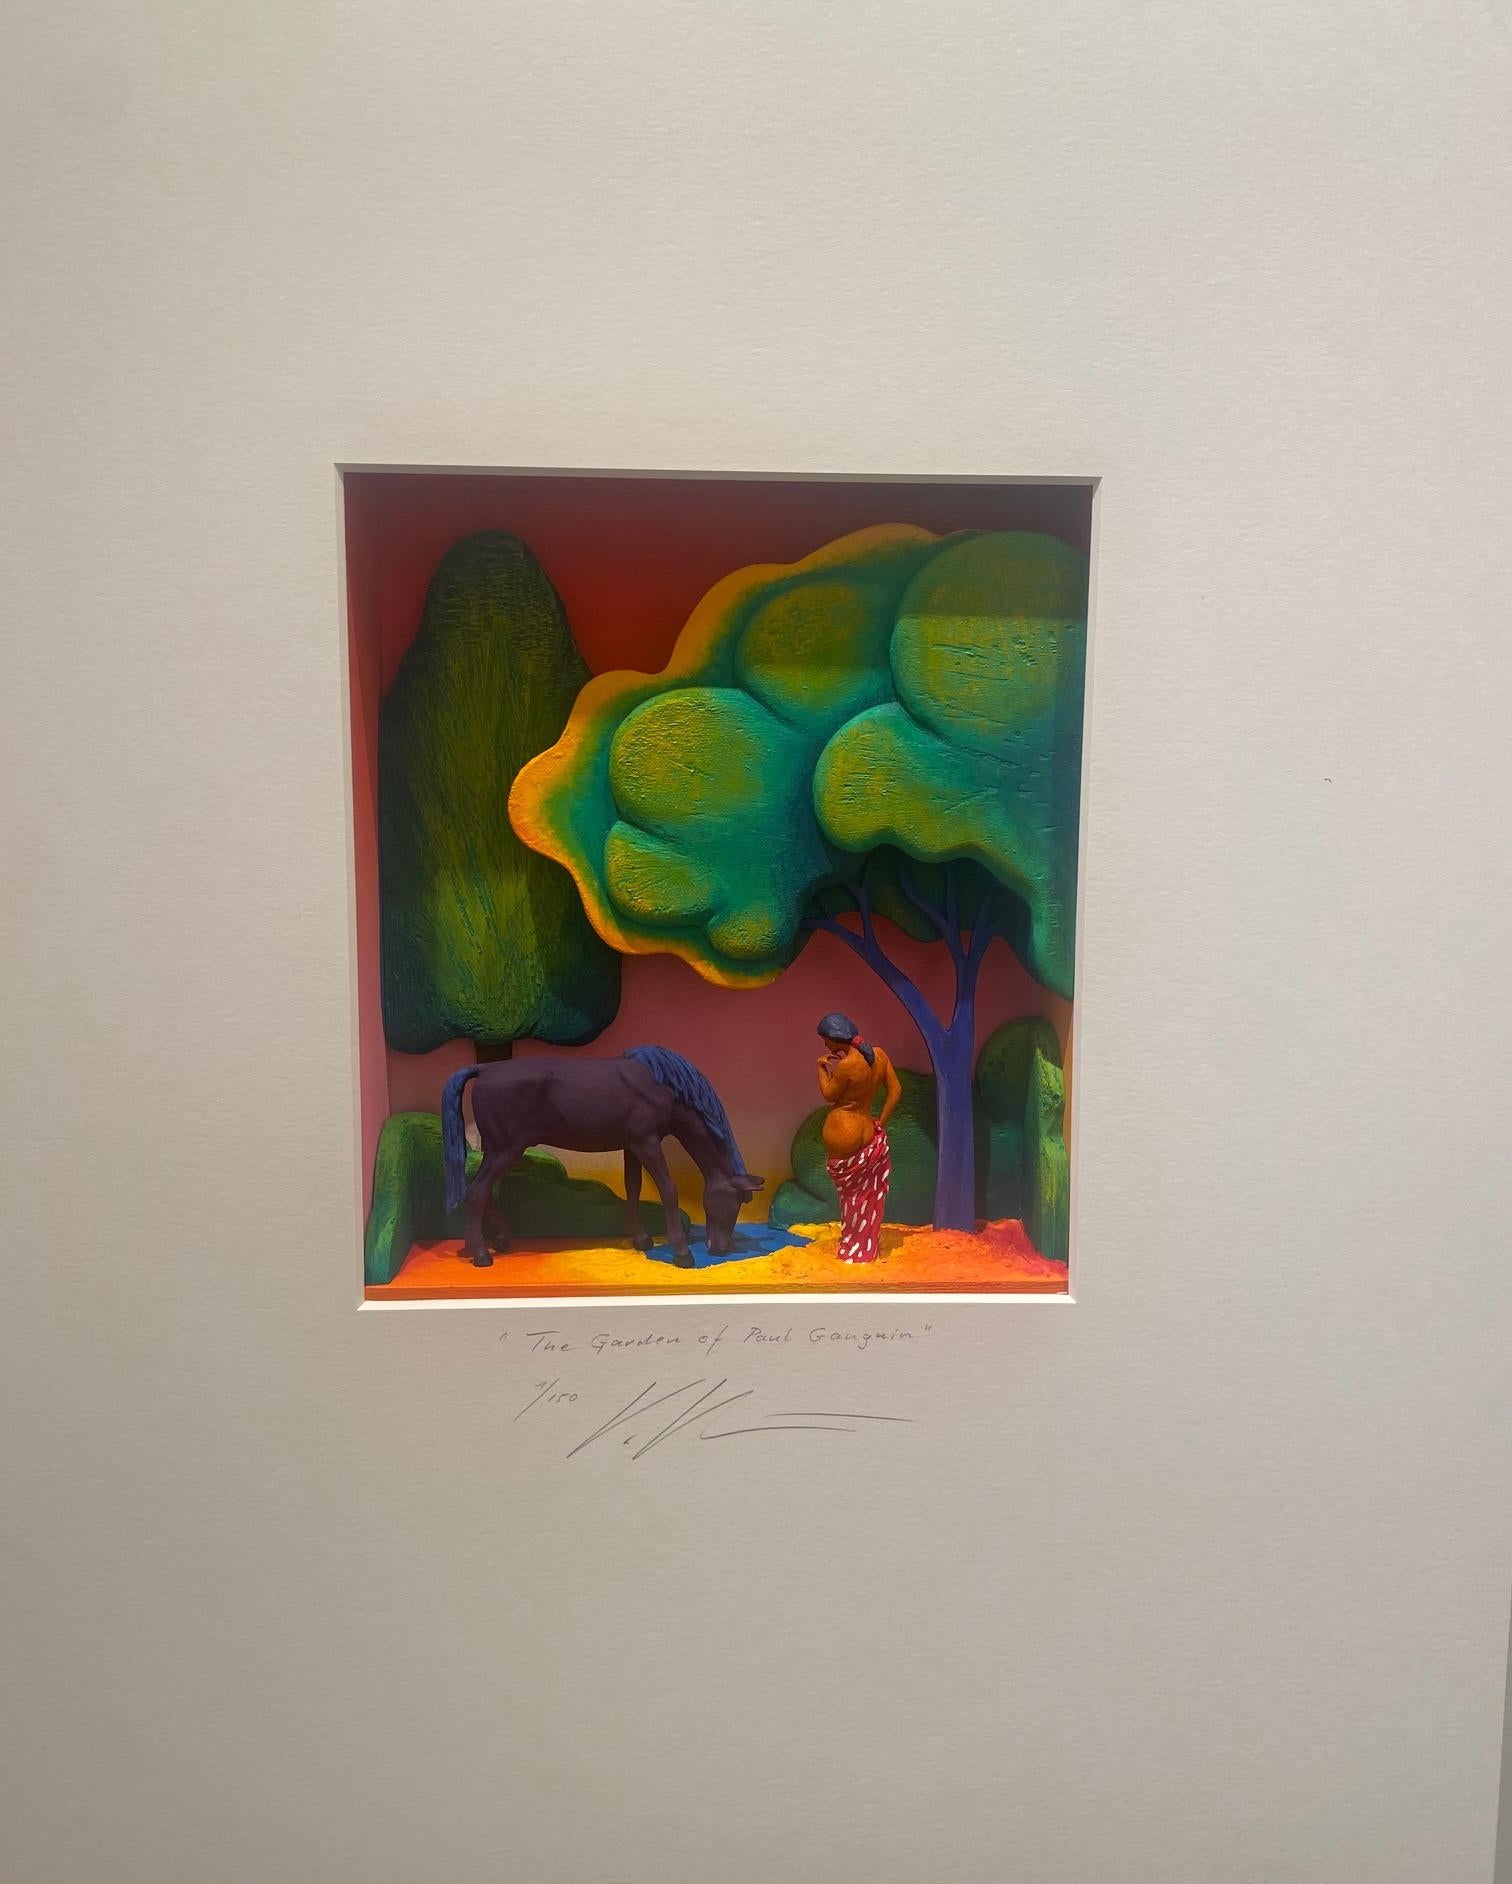 Hommage an Gauguin - zeitgenössisches Kunstwerk, Design-Hommage an den fauvistischen Meister Gauguin (Assemblage), Mixed Media Art, von Volker Kuhn